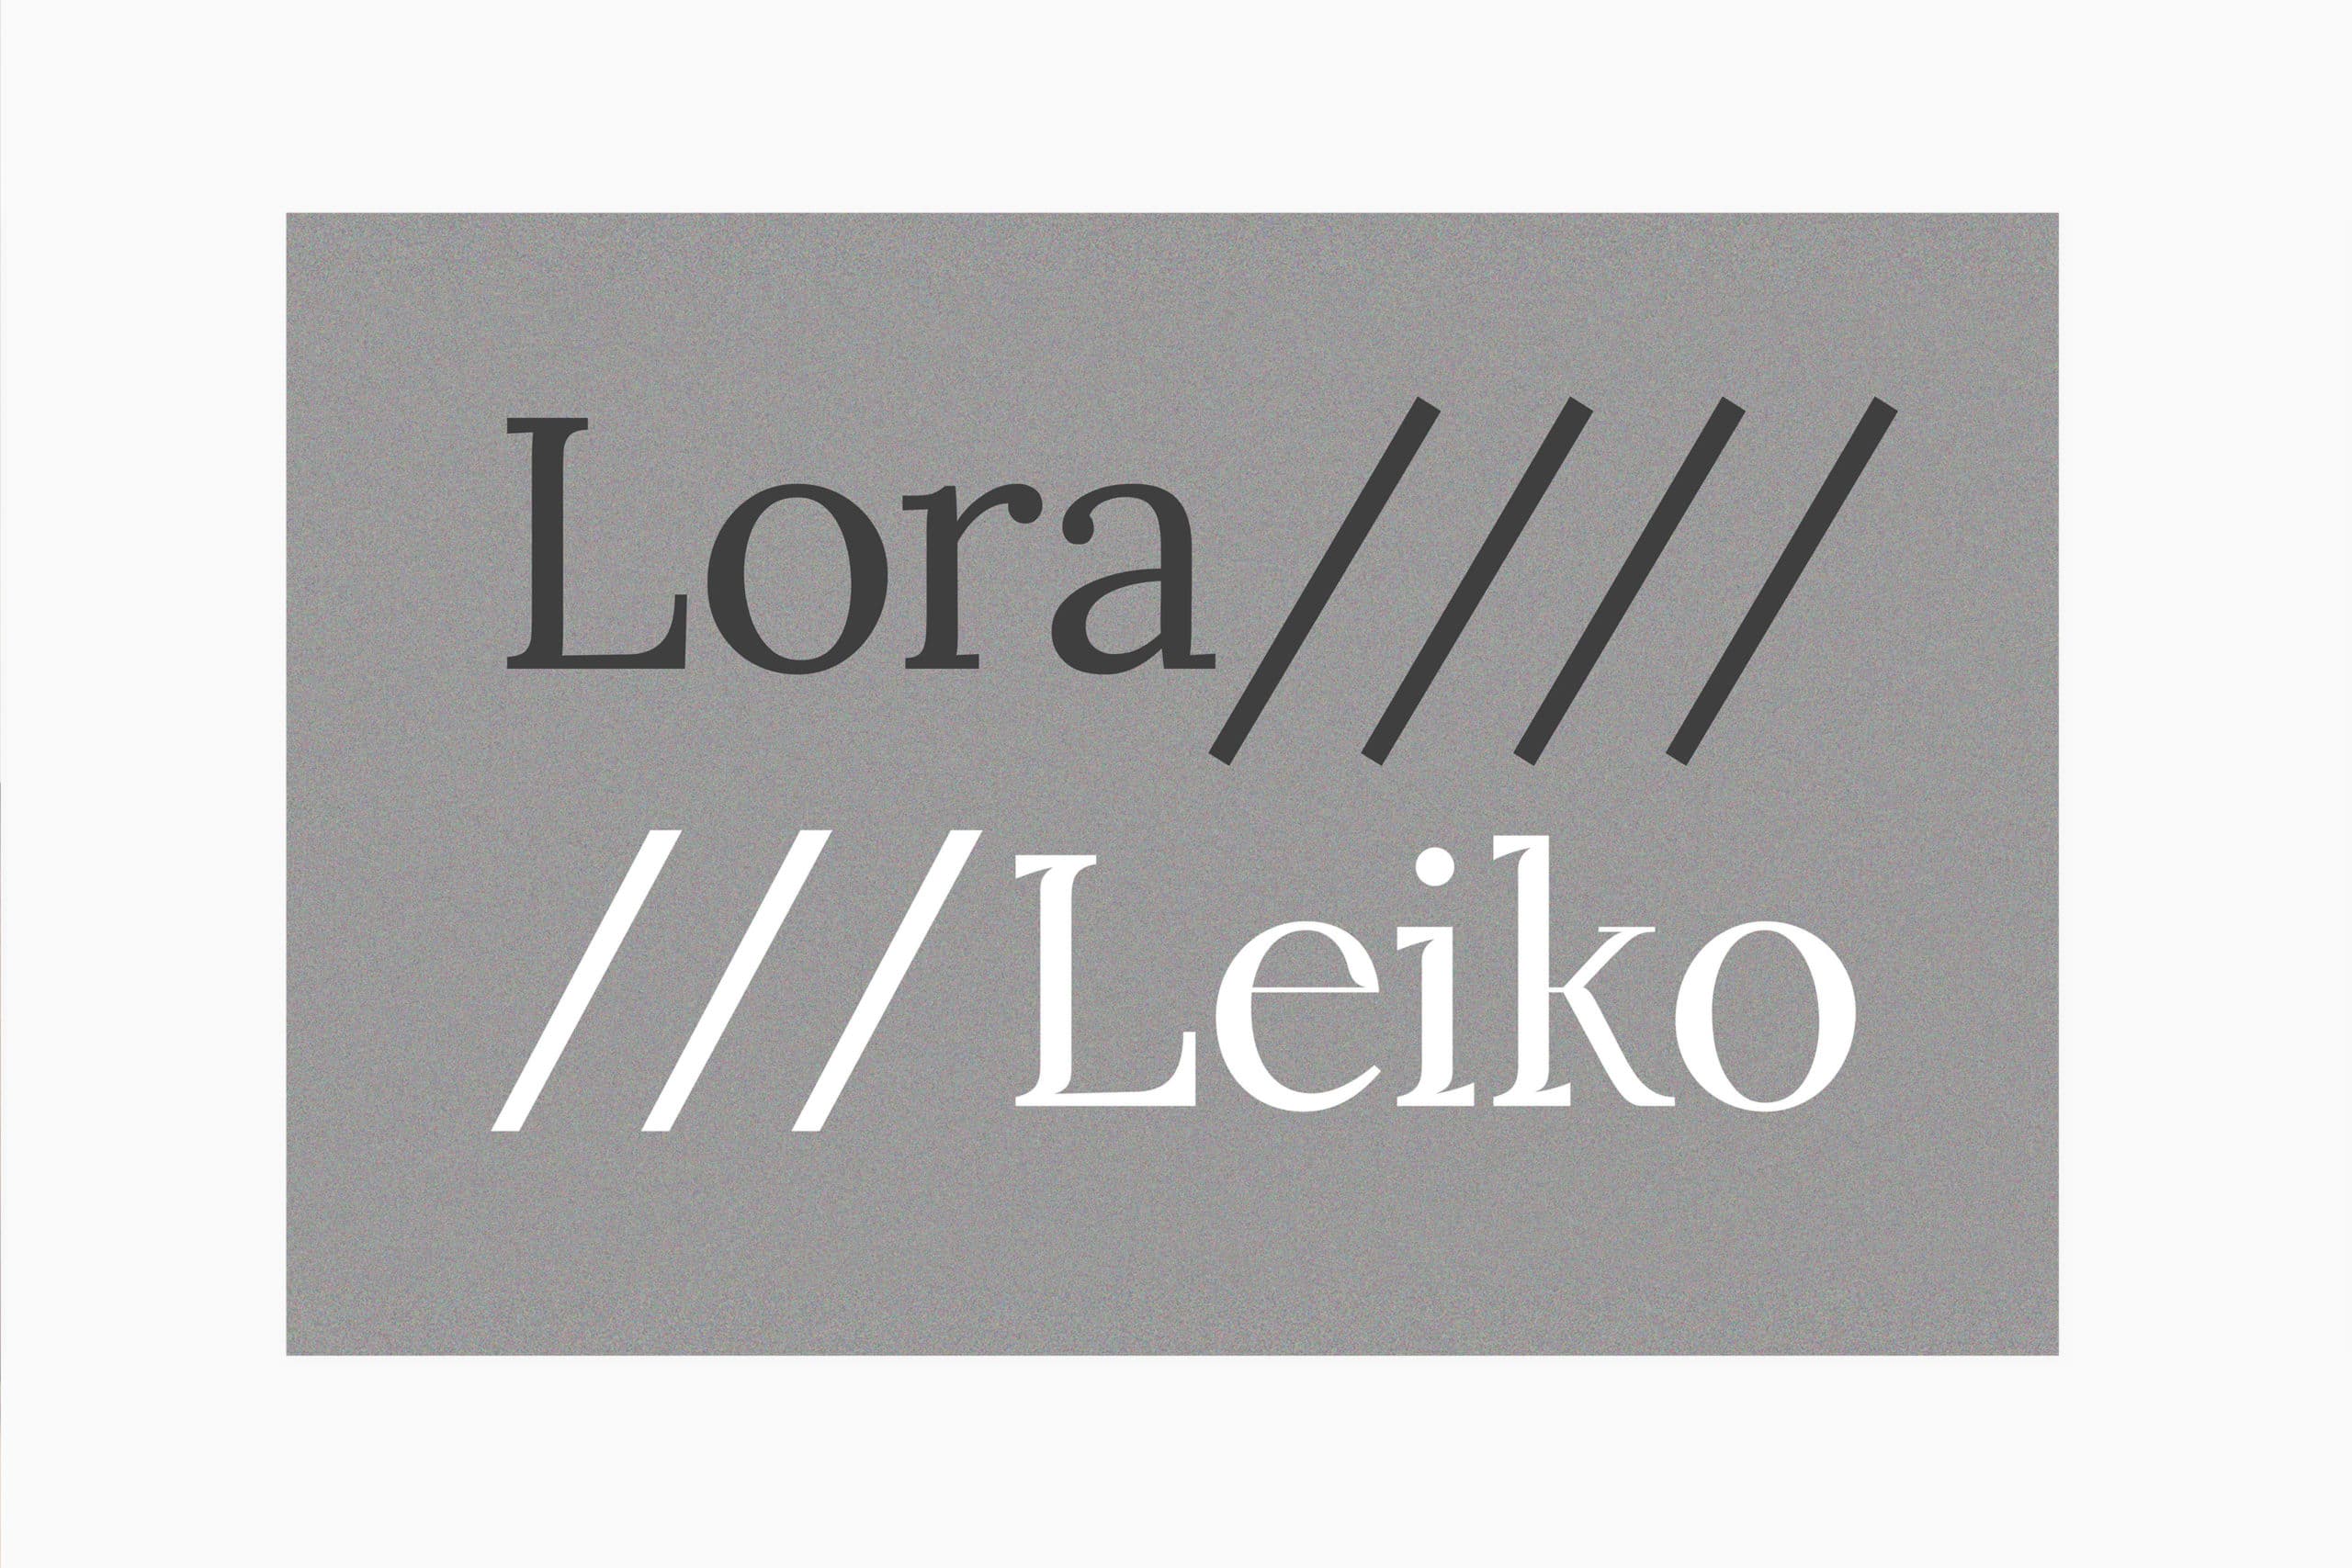 Typographie Leiko écrite en version noire et blanche sur fond gris